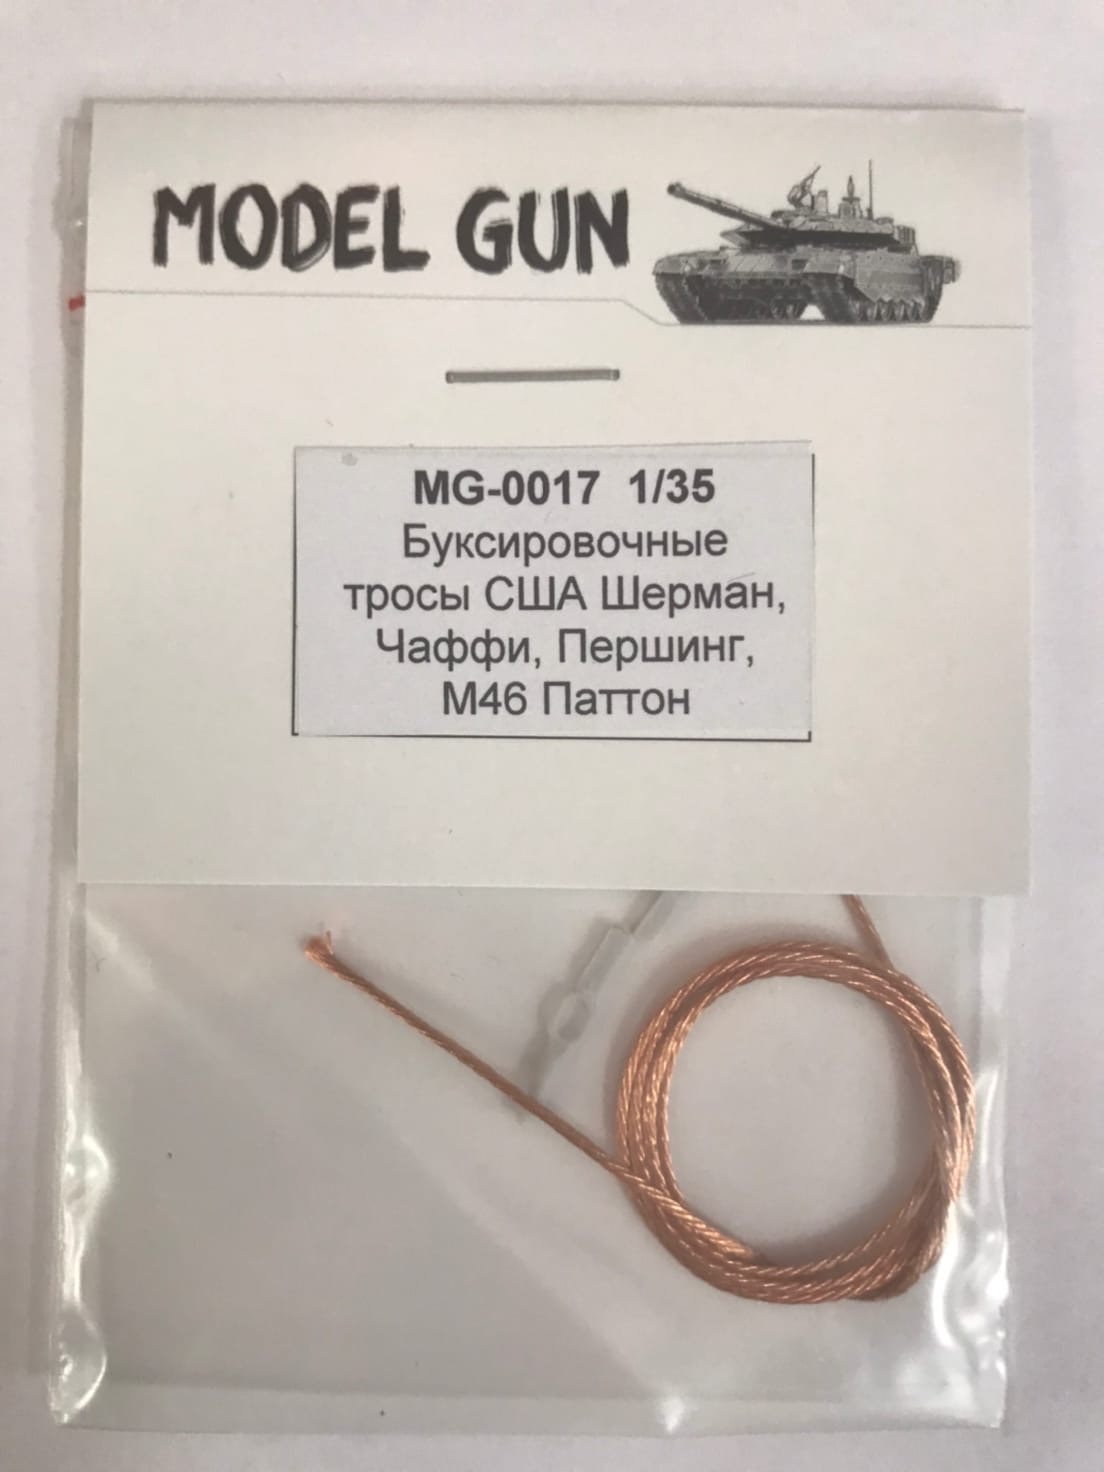 MG-0017  дополнения из металла  Буксировочные тросы США Шерман, Чаффи, Першинг, М46 Паттон  (1:35)